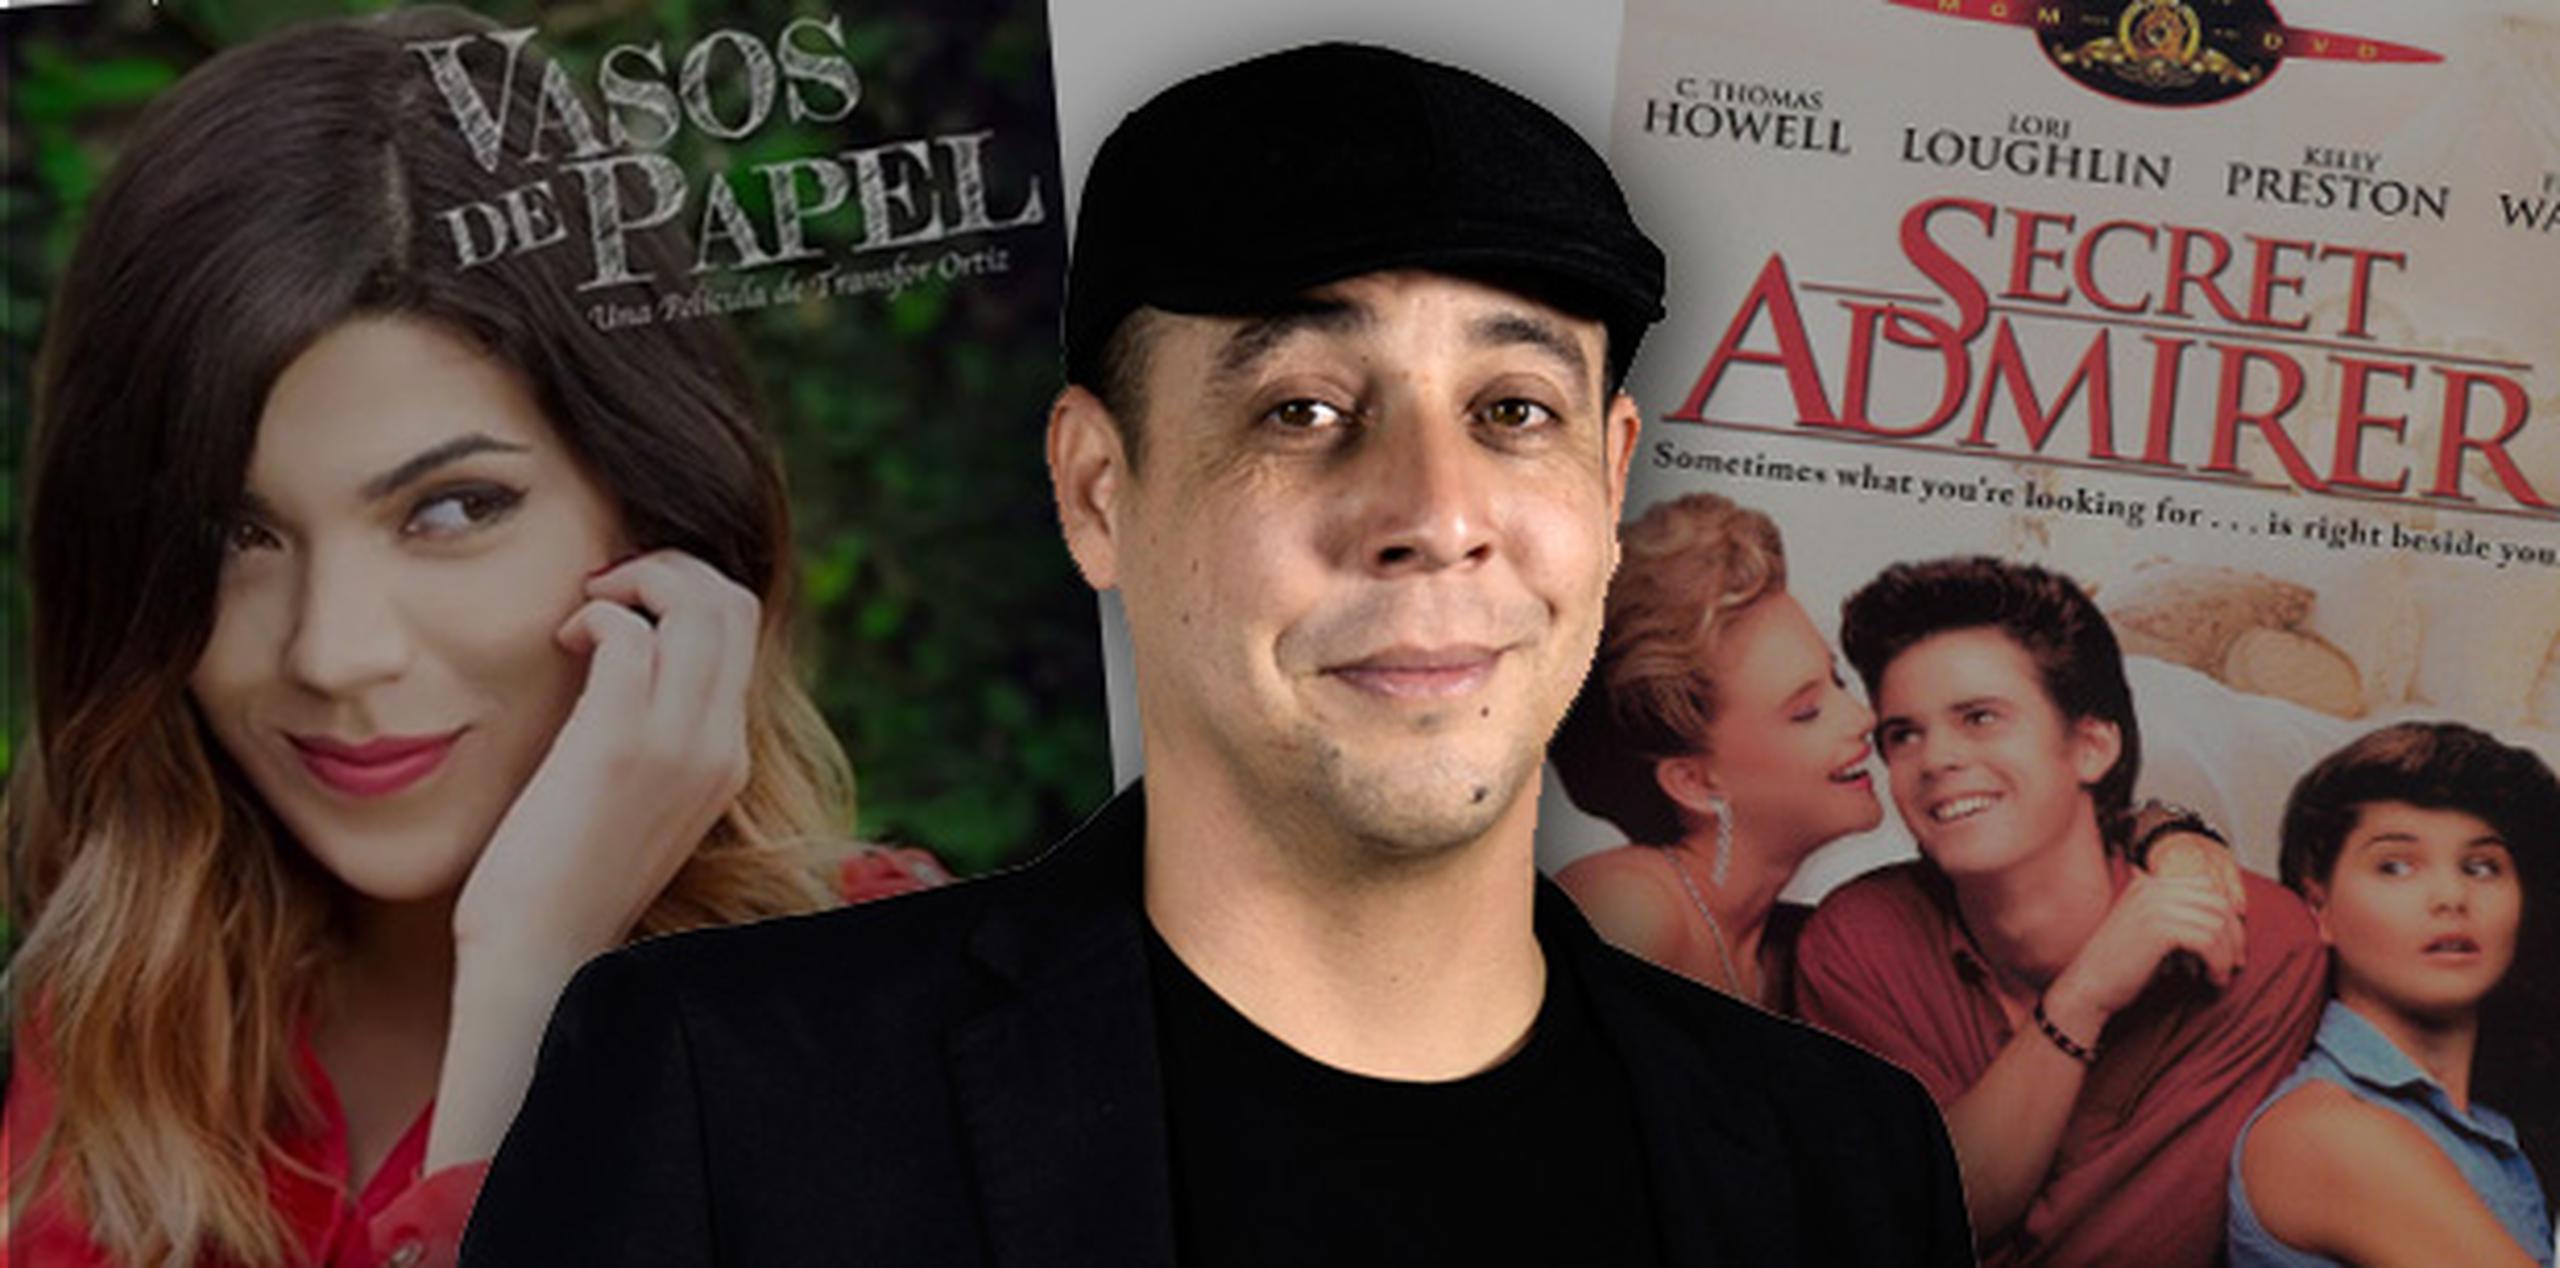 El director Transfor Ortiz ha sido señalado de plagiar la película "Secret Admirer" en su filme "Vasos de papel".